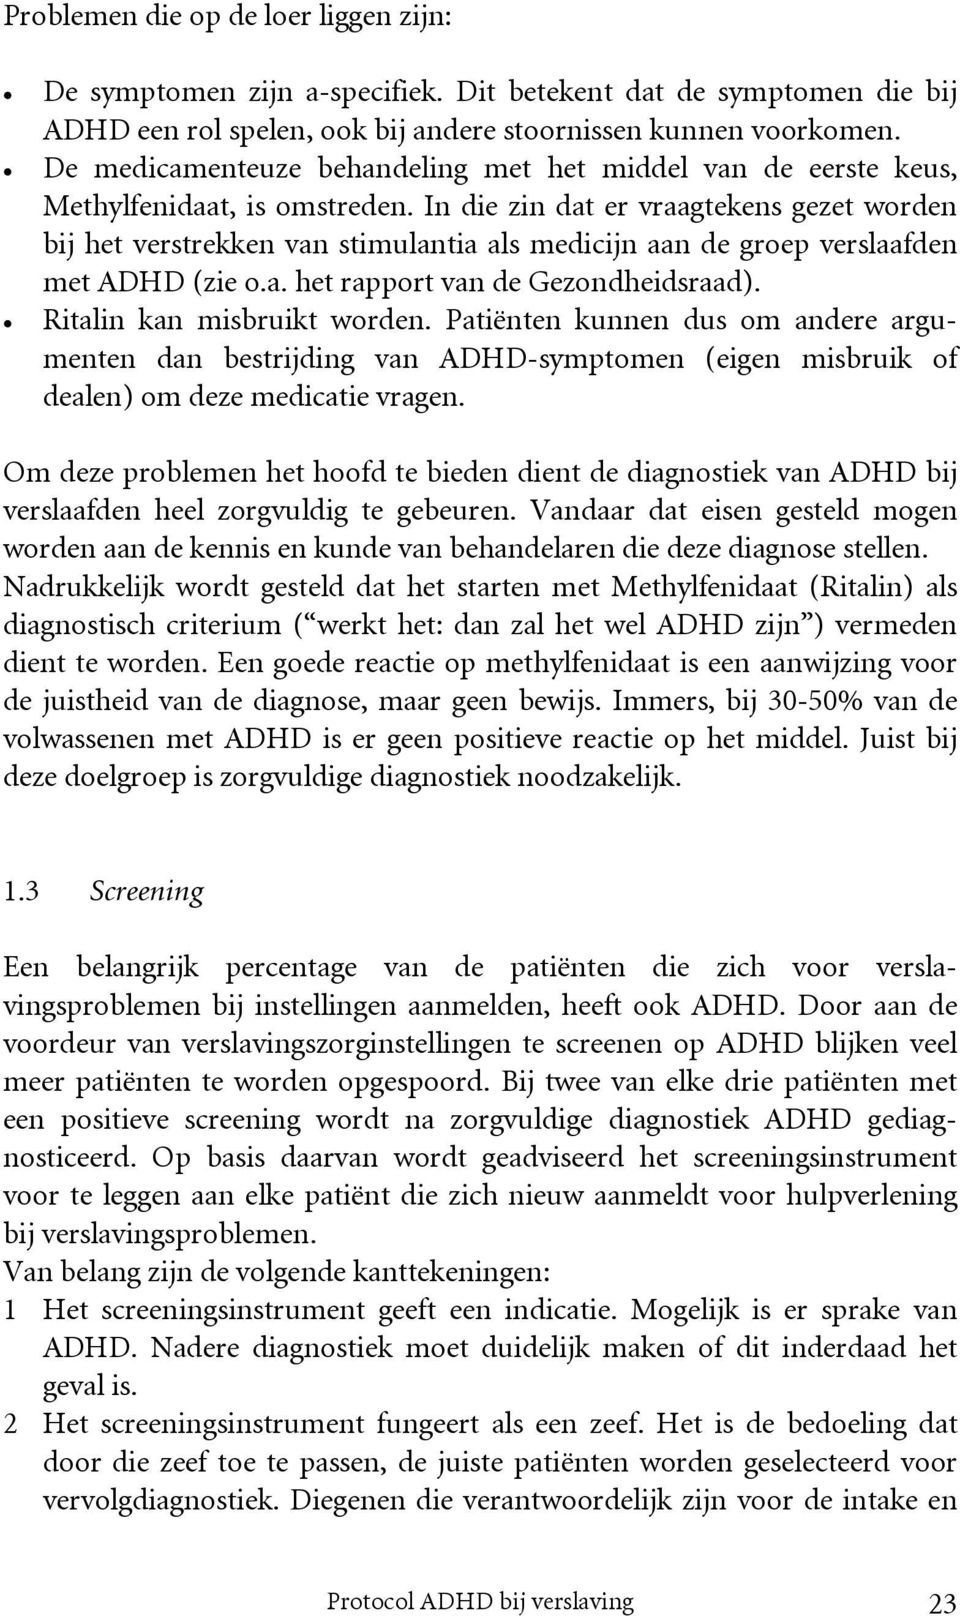 In die zin dat er vraagtekens gezet worden bij het verstrekken van stimulantia als medicijn aan de groep verslaafden met ADHD (zie o.a. het rapport van de Gezondheidsraad).